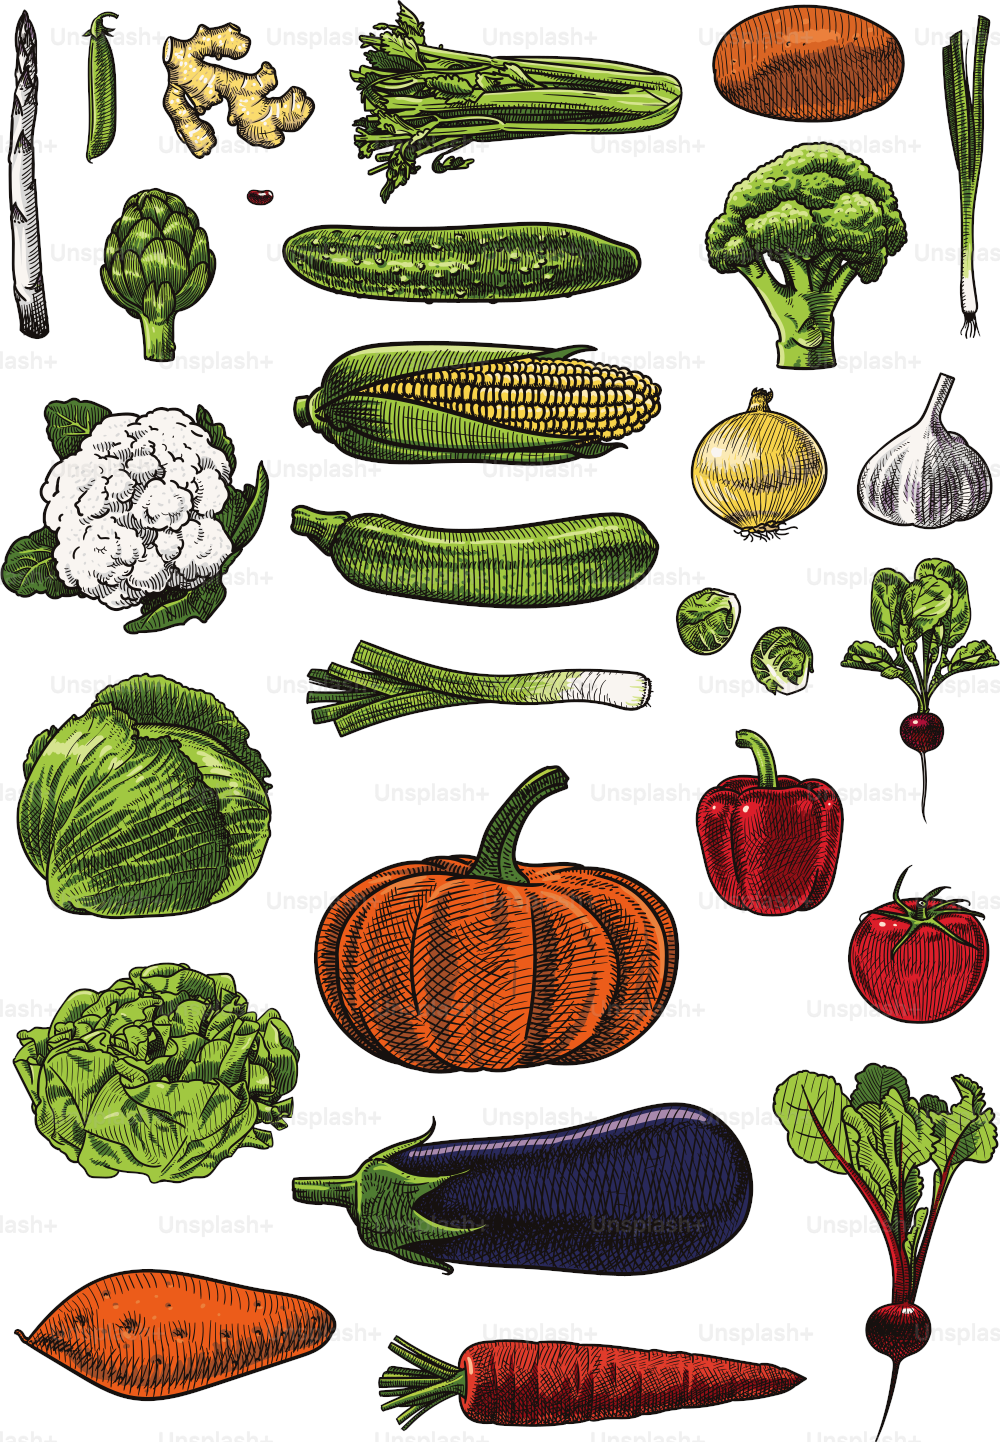 Ilustrações vetoriais de vegetais variados. Cuidadosamente agrupado e rotulado, fácil de selecionar e editar.